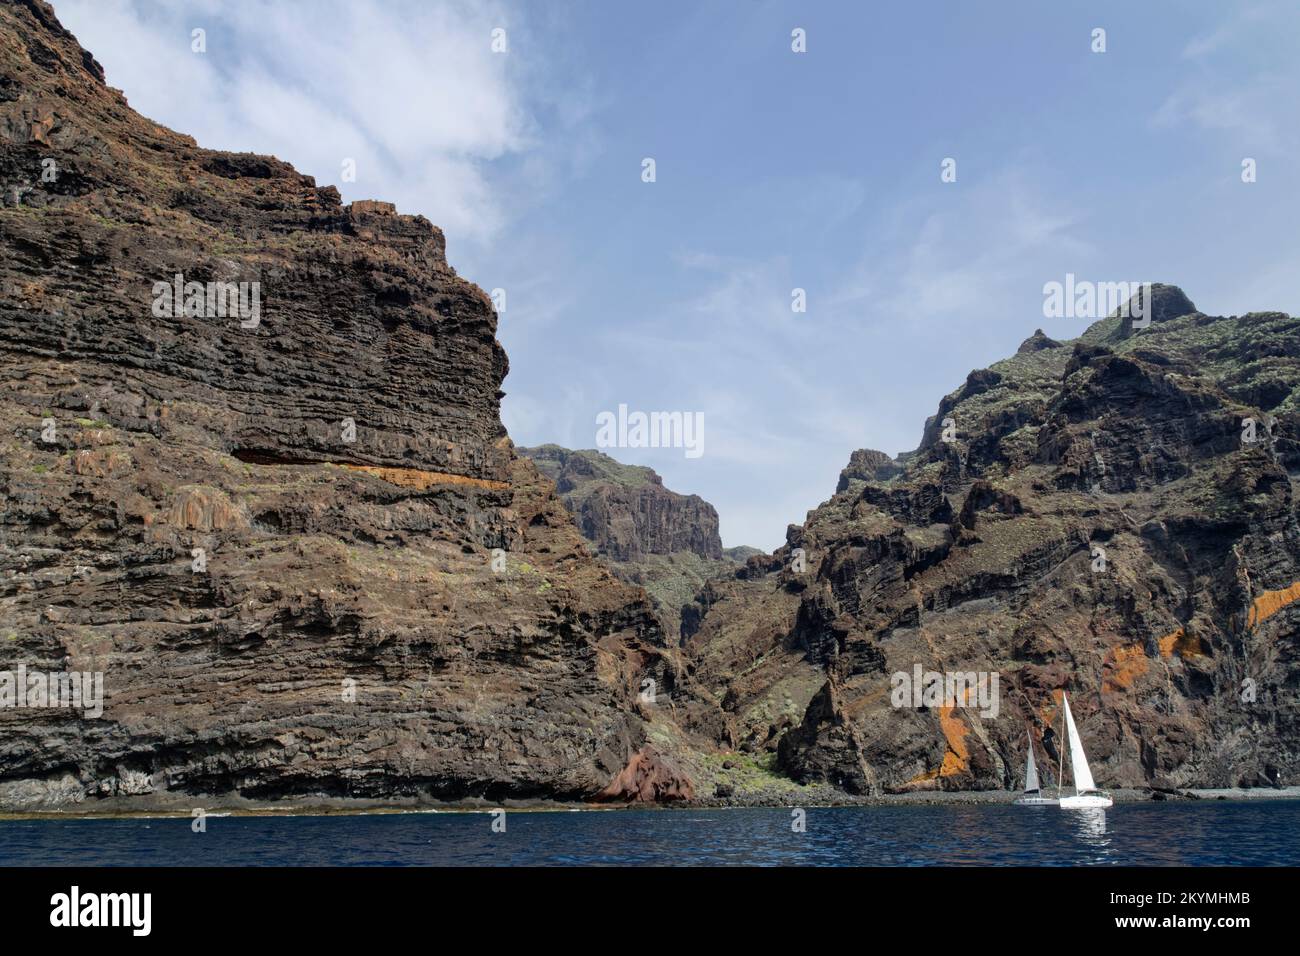 Barche a vela ormeggiate sotto i 500 metri di altezza 'Acantilados de Los Gigantes' scogliere vulcaniche, Tenerife, Isole Canarie, Spagna, ottobre. Foto Stock